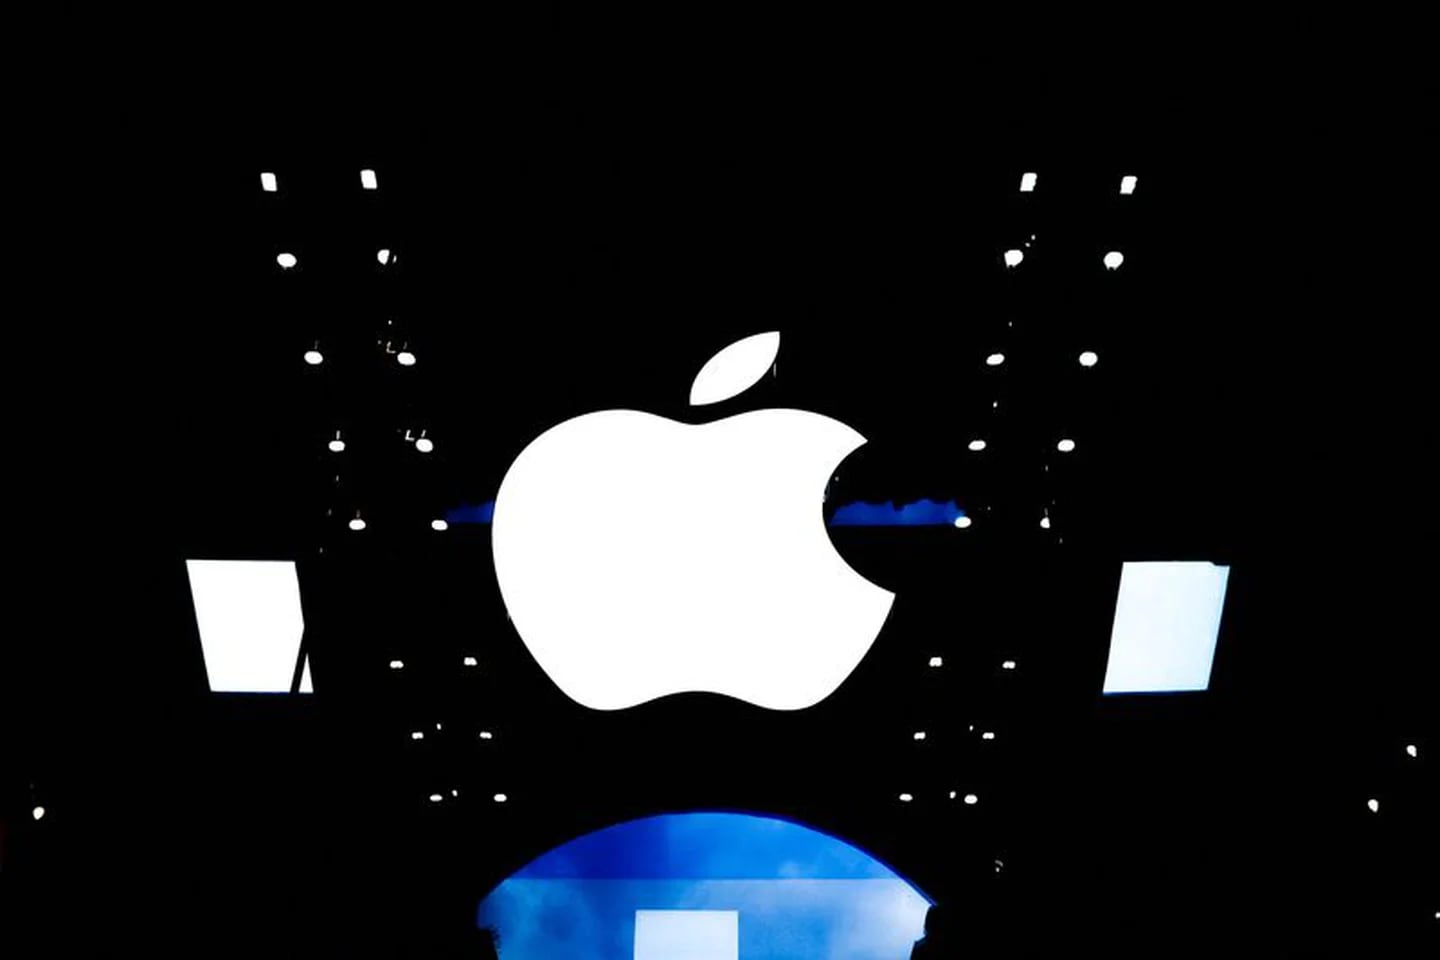 Apple established itself as a major technology company